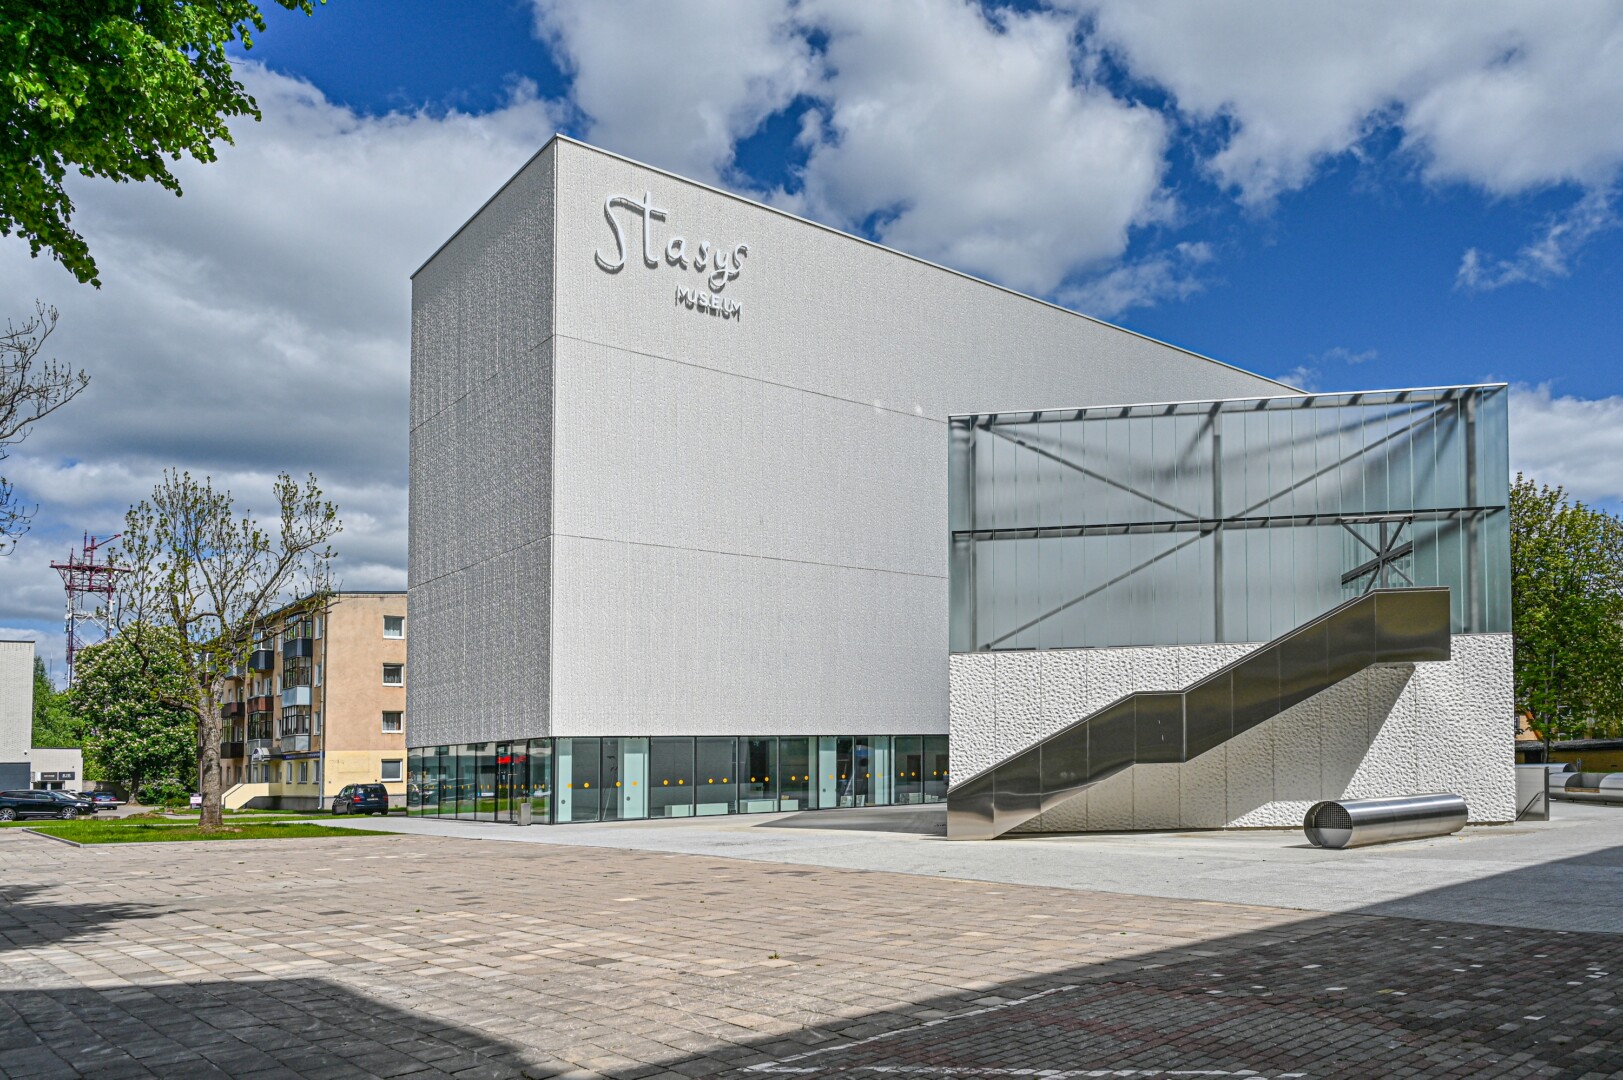 Gegužės 31-ąją atidaromas „Stasys Museum“ tapo postūmiu miesto kultūros įstaigoms pakoreguoti savo darbo grafikus. G. KARTANO nuotr.